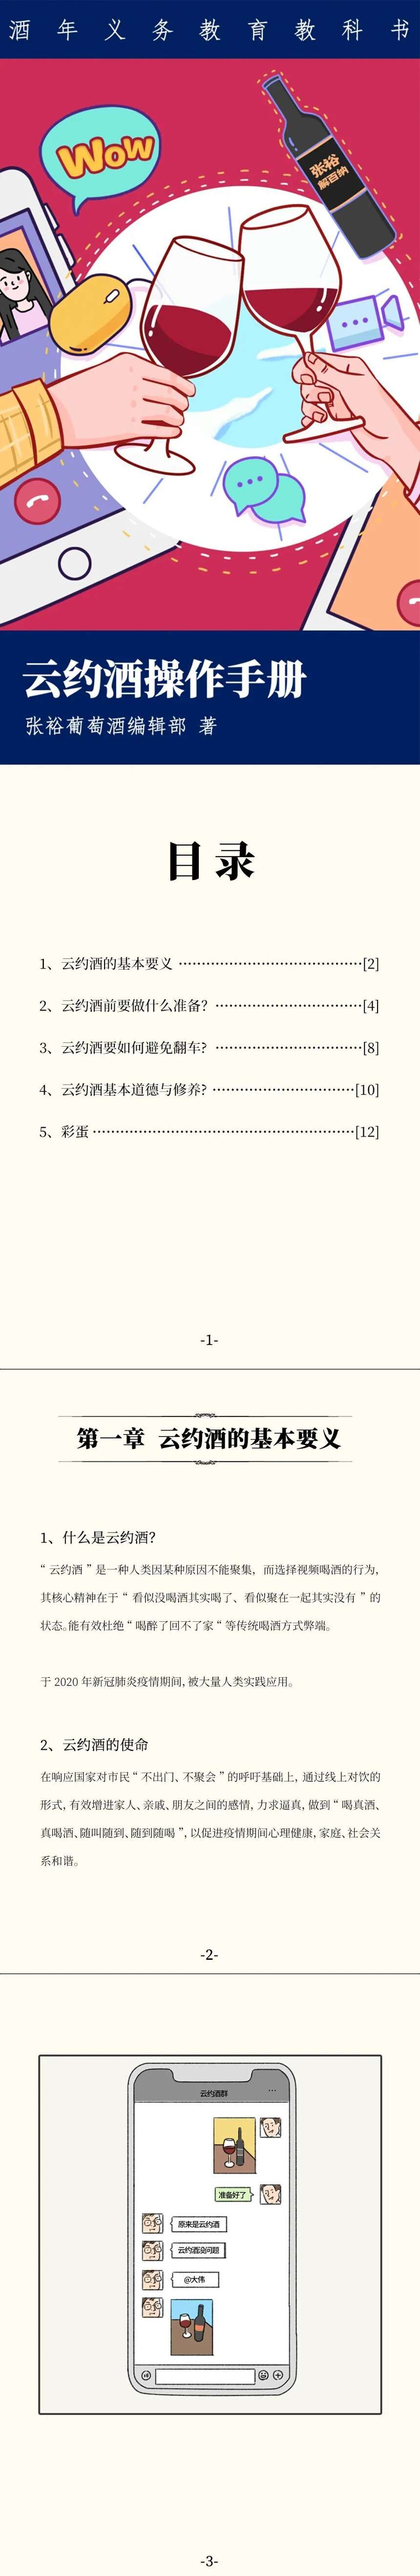 全网最火云约酒操作手册.pdf